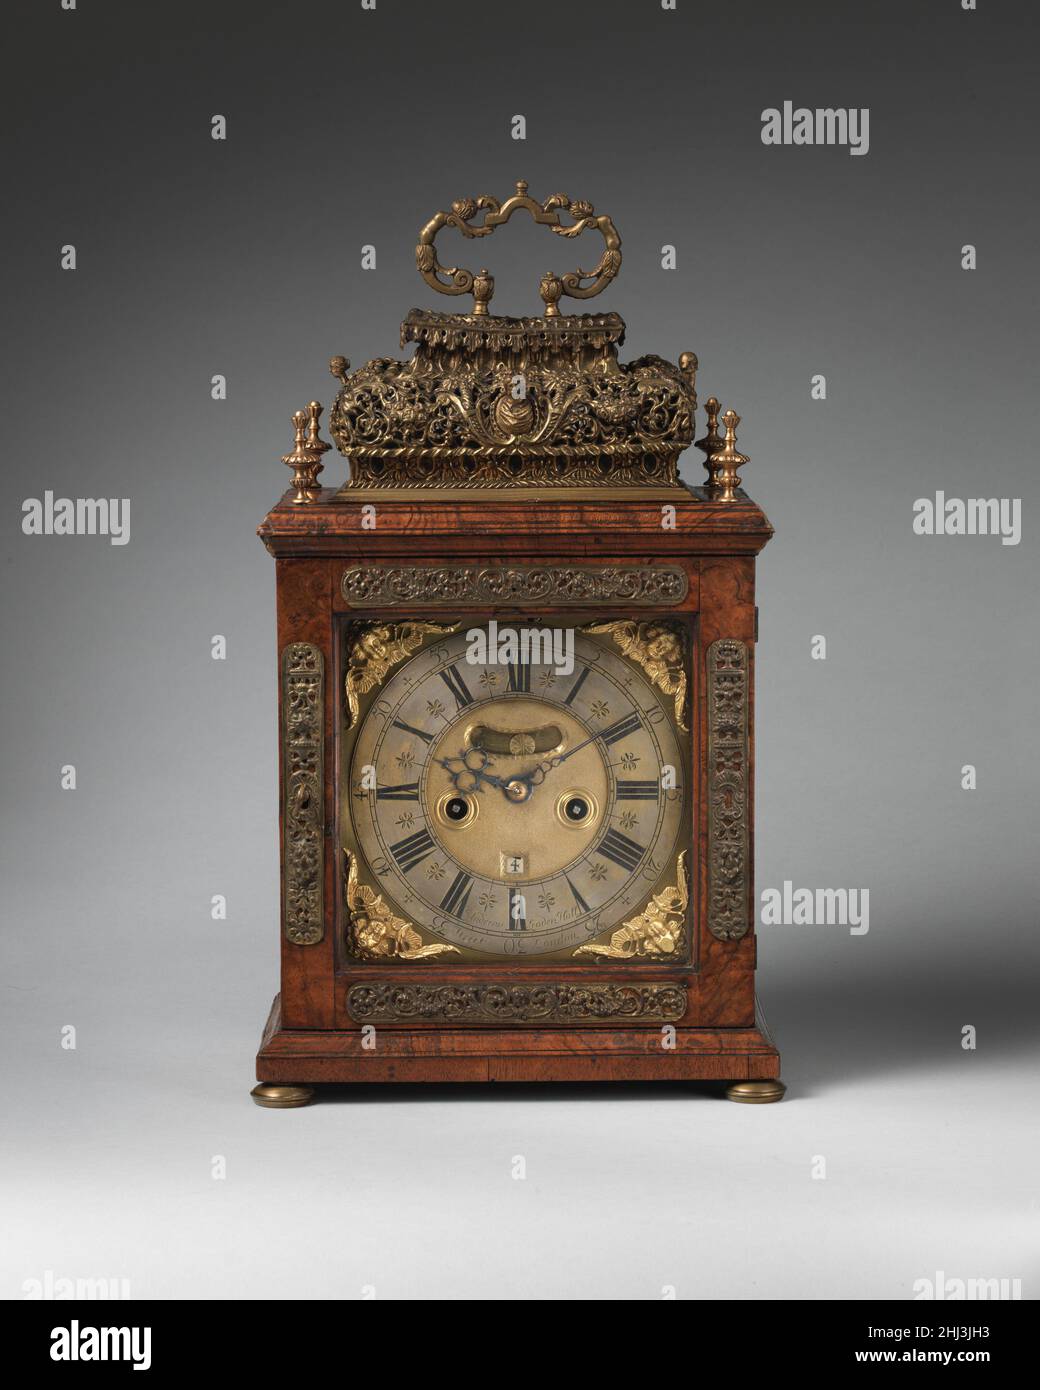 Tisch- oder Halteruhr 1690 Uhrmacher: John Andrews Diese Art von Uhrwerk hat ein kurzes Pendel, wodurch die Uhr klein genug ist, um auf einem Regal oder einer Halterung zu sitzen. Die Uhr hat eine gravierte Rückplatte, die im späten siebzehnten Jahrhundert in London modisch war. Die Gravur wurde von einer relativ kleinen Gruppe von Spezialisten durchgeführt, die unterschiedliche Fähigkeiten hatten. Ihre Arbeit ist unsigniert und bleibt zum größten Teil anonym. Die Unterschrift ist hier die des Uhrmachers, des Uhrmachers John Andrews. Tischuhr oder Halteruhr. Großbritannien, London. 1690. Vergoldetes Messing und Stahl; Gehäuse: Walnu Stockfoto